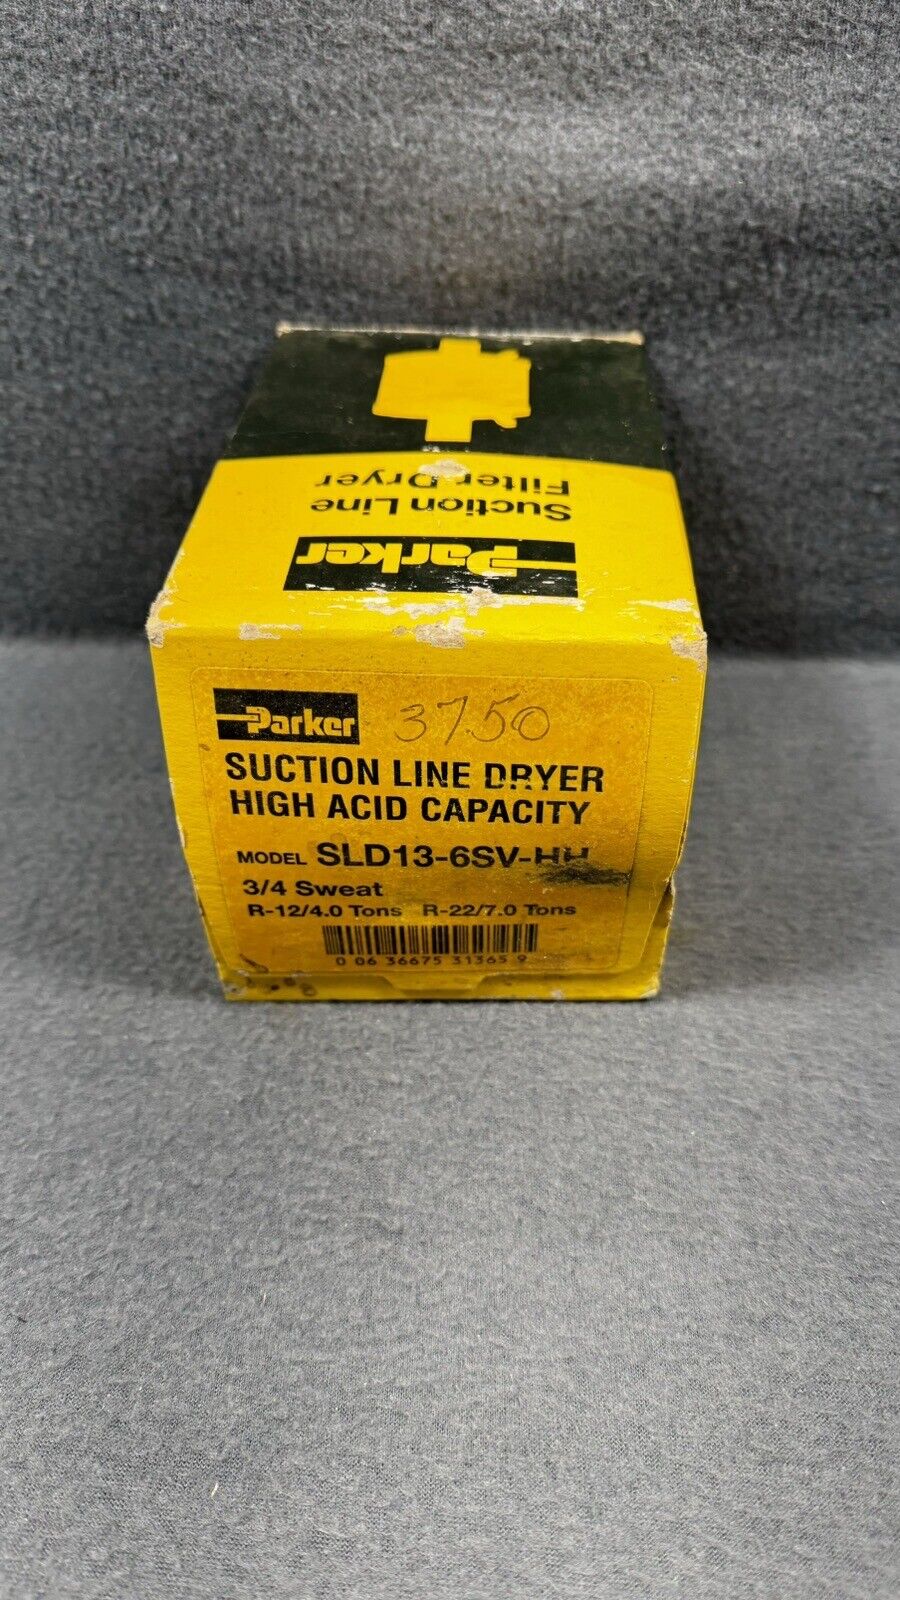 Parker SLD13-6SV-HH Suction Line Dryer High Acid Capacity 3/4”